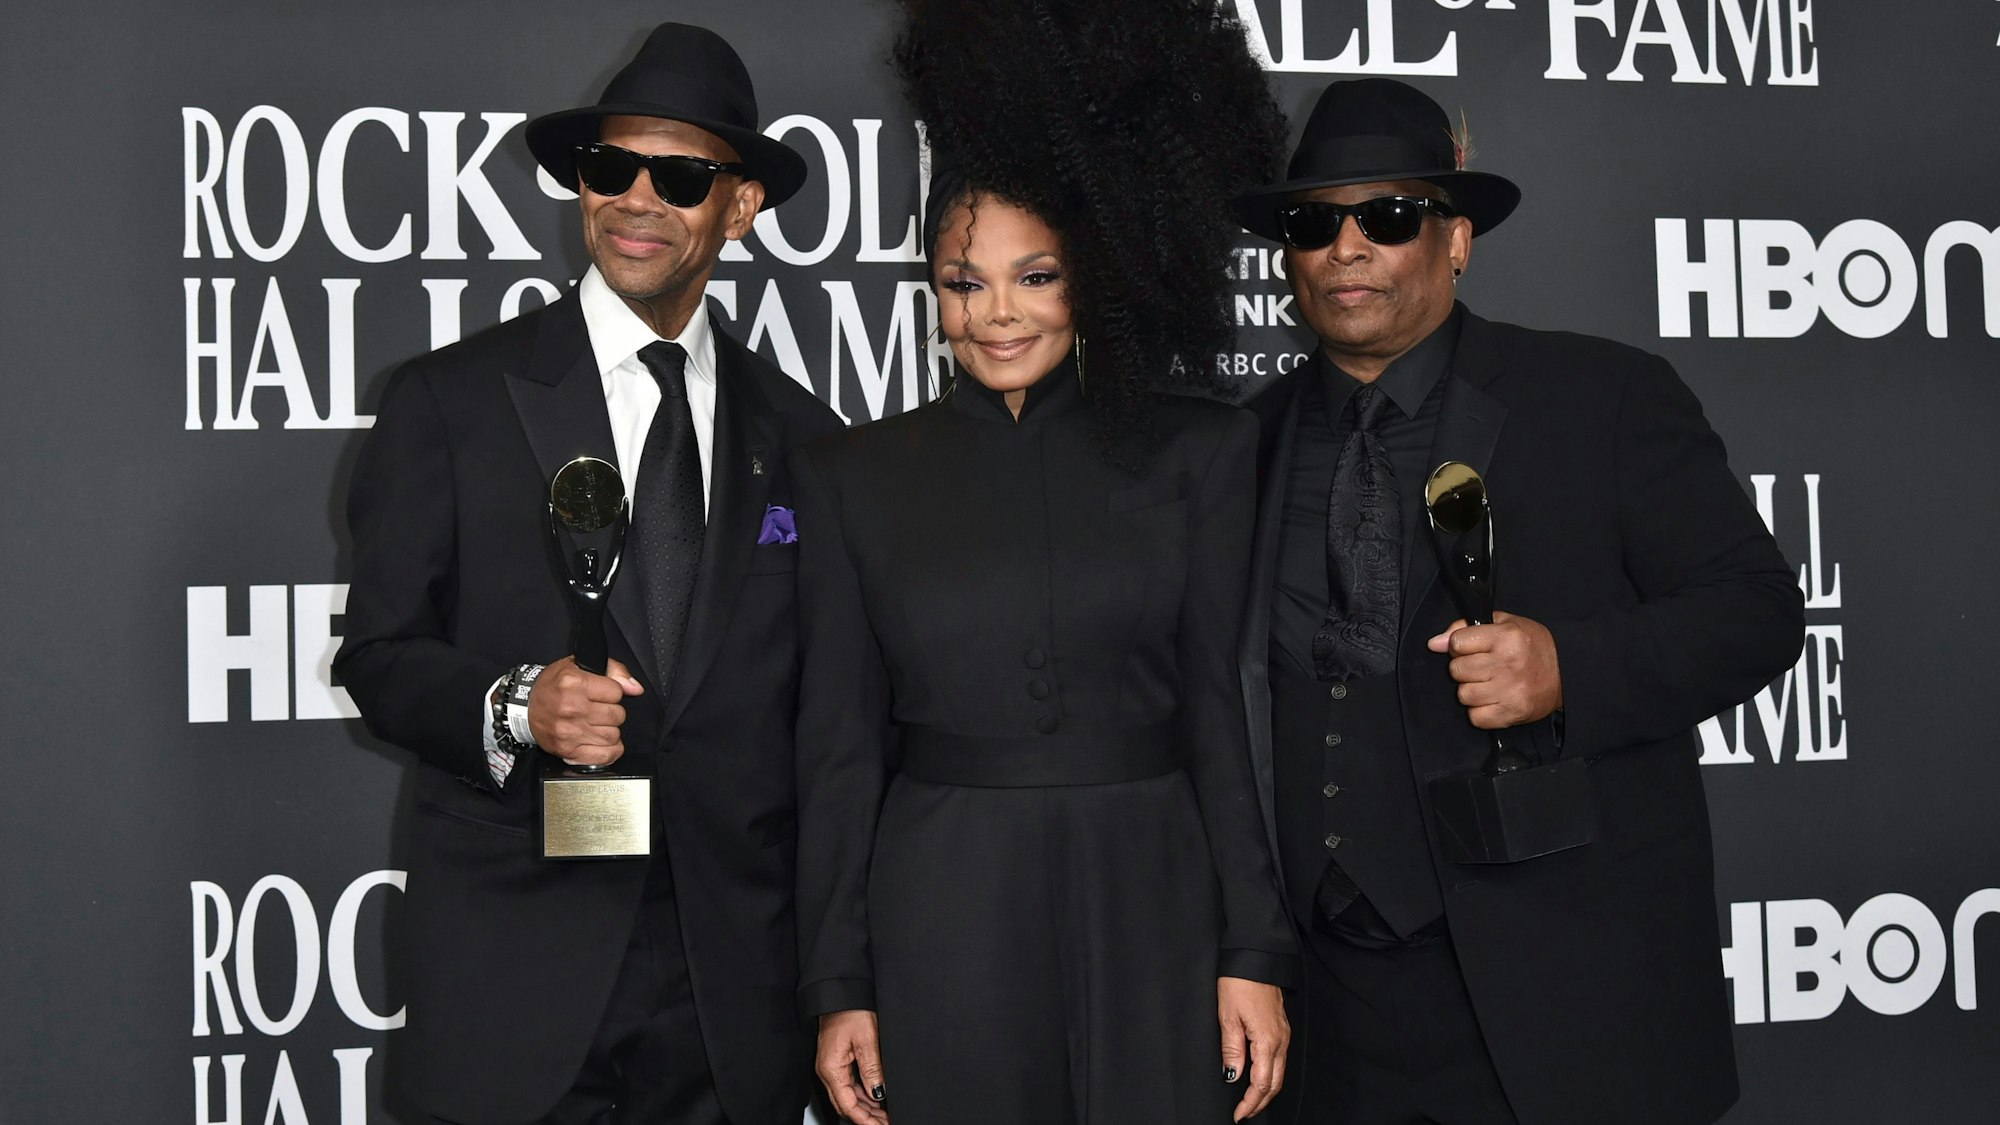 Jimmy Jam und Terry Lewis, in schwarzen Anzügen, halten ihre Auszeichnungen. In der Mitte steht Janet Jackson mit Hochsteckfrisur und schwarzem Hosenanzug.